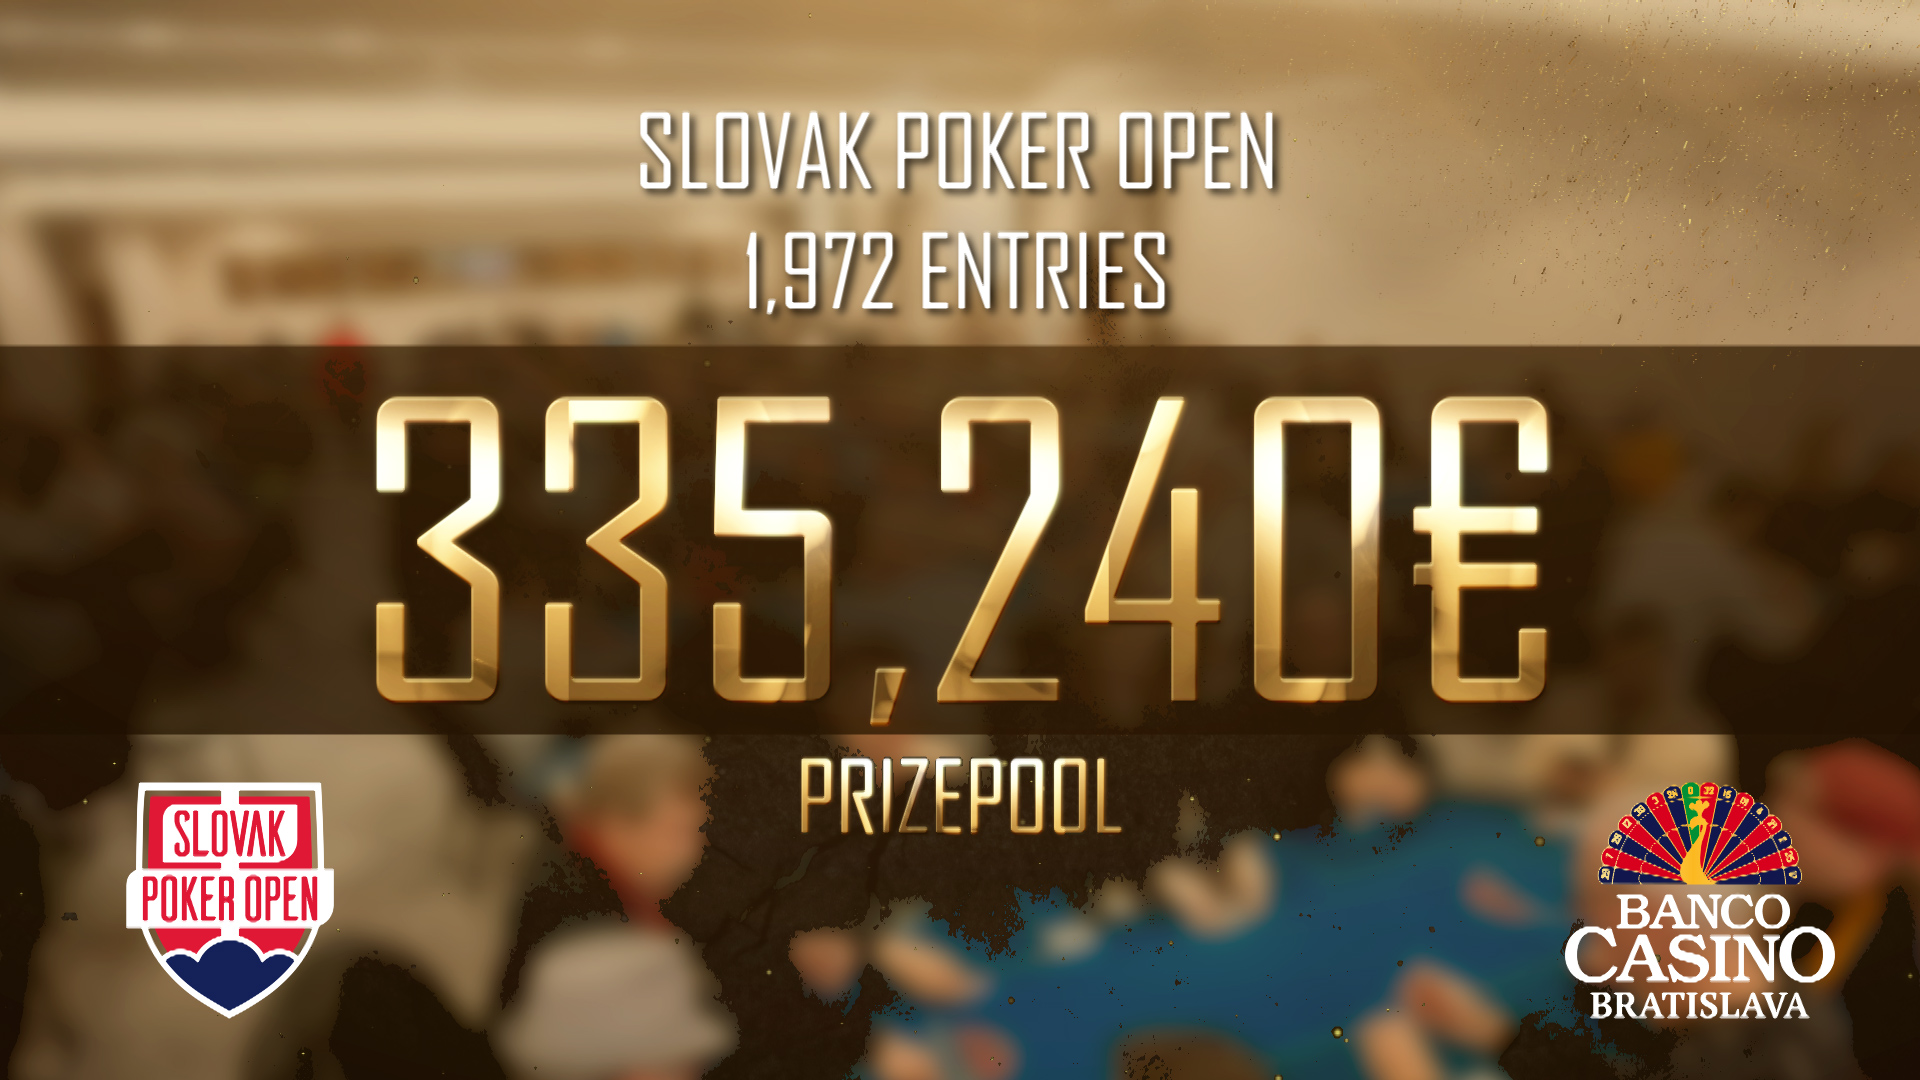 Slovak Poker Open stanovil nový rekord – 1.972 vstupov, 335.240€ prizepool a dnes si šampión odnesie 61.400€!